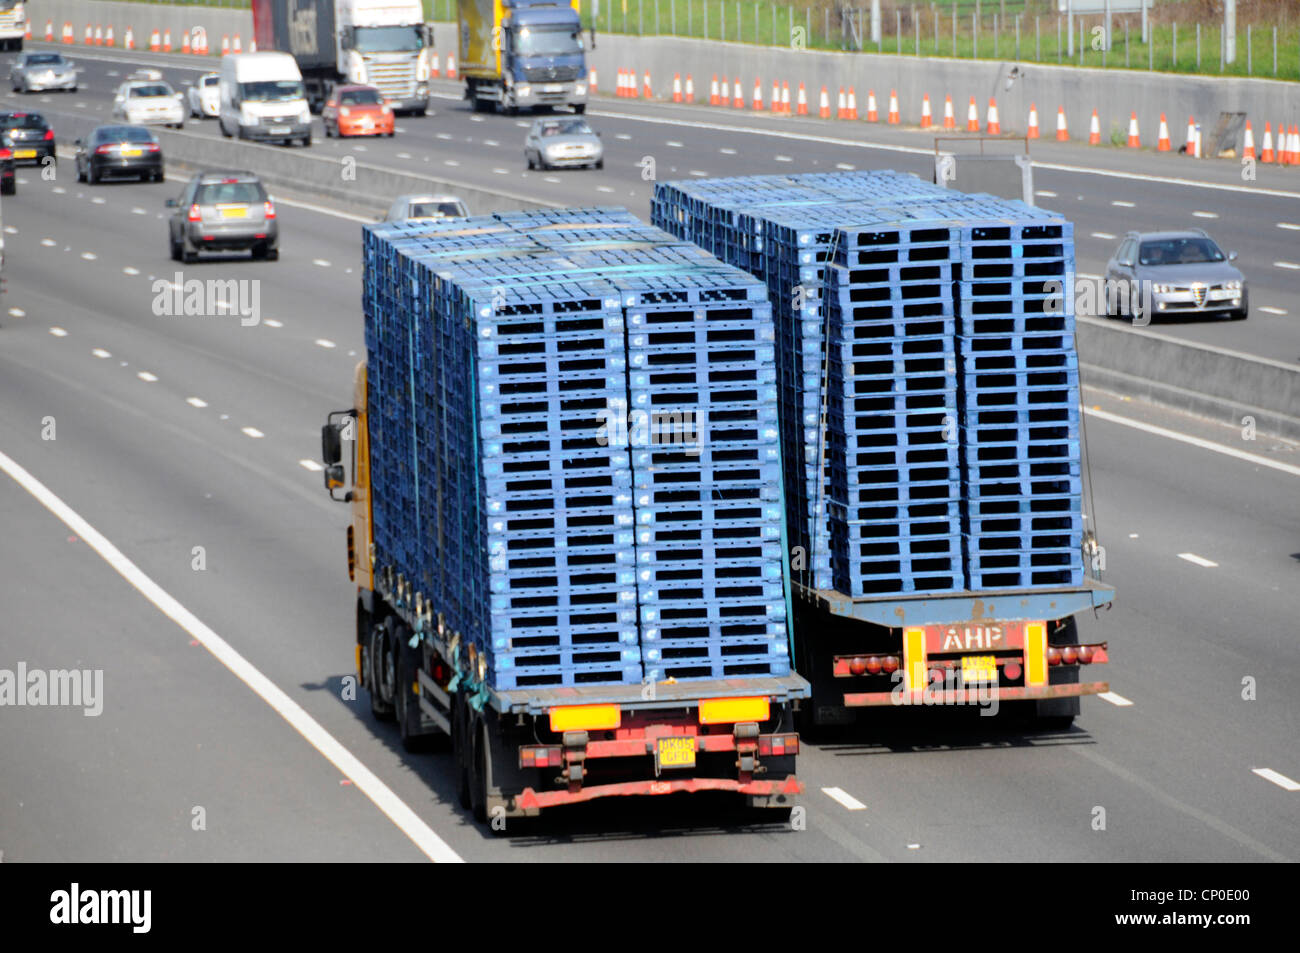 Image de transport vue arrière depuis le dessus deux camions camion remorque articulée hgv camions chargés de palettes en bois bleu sur l'autoroute britannique Banque D'Images